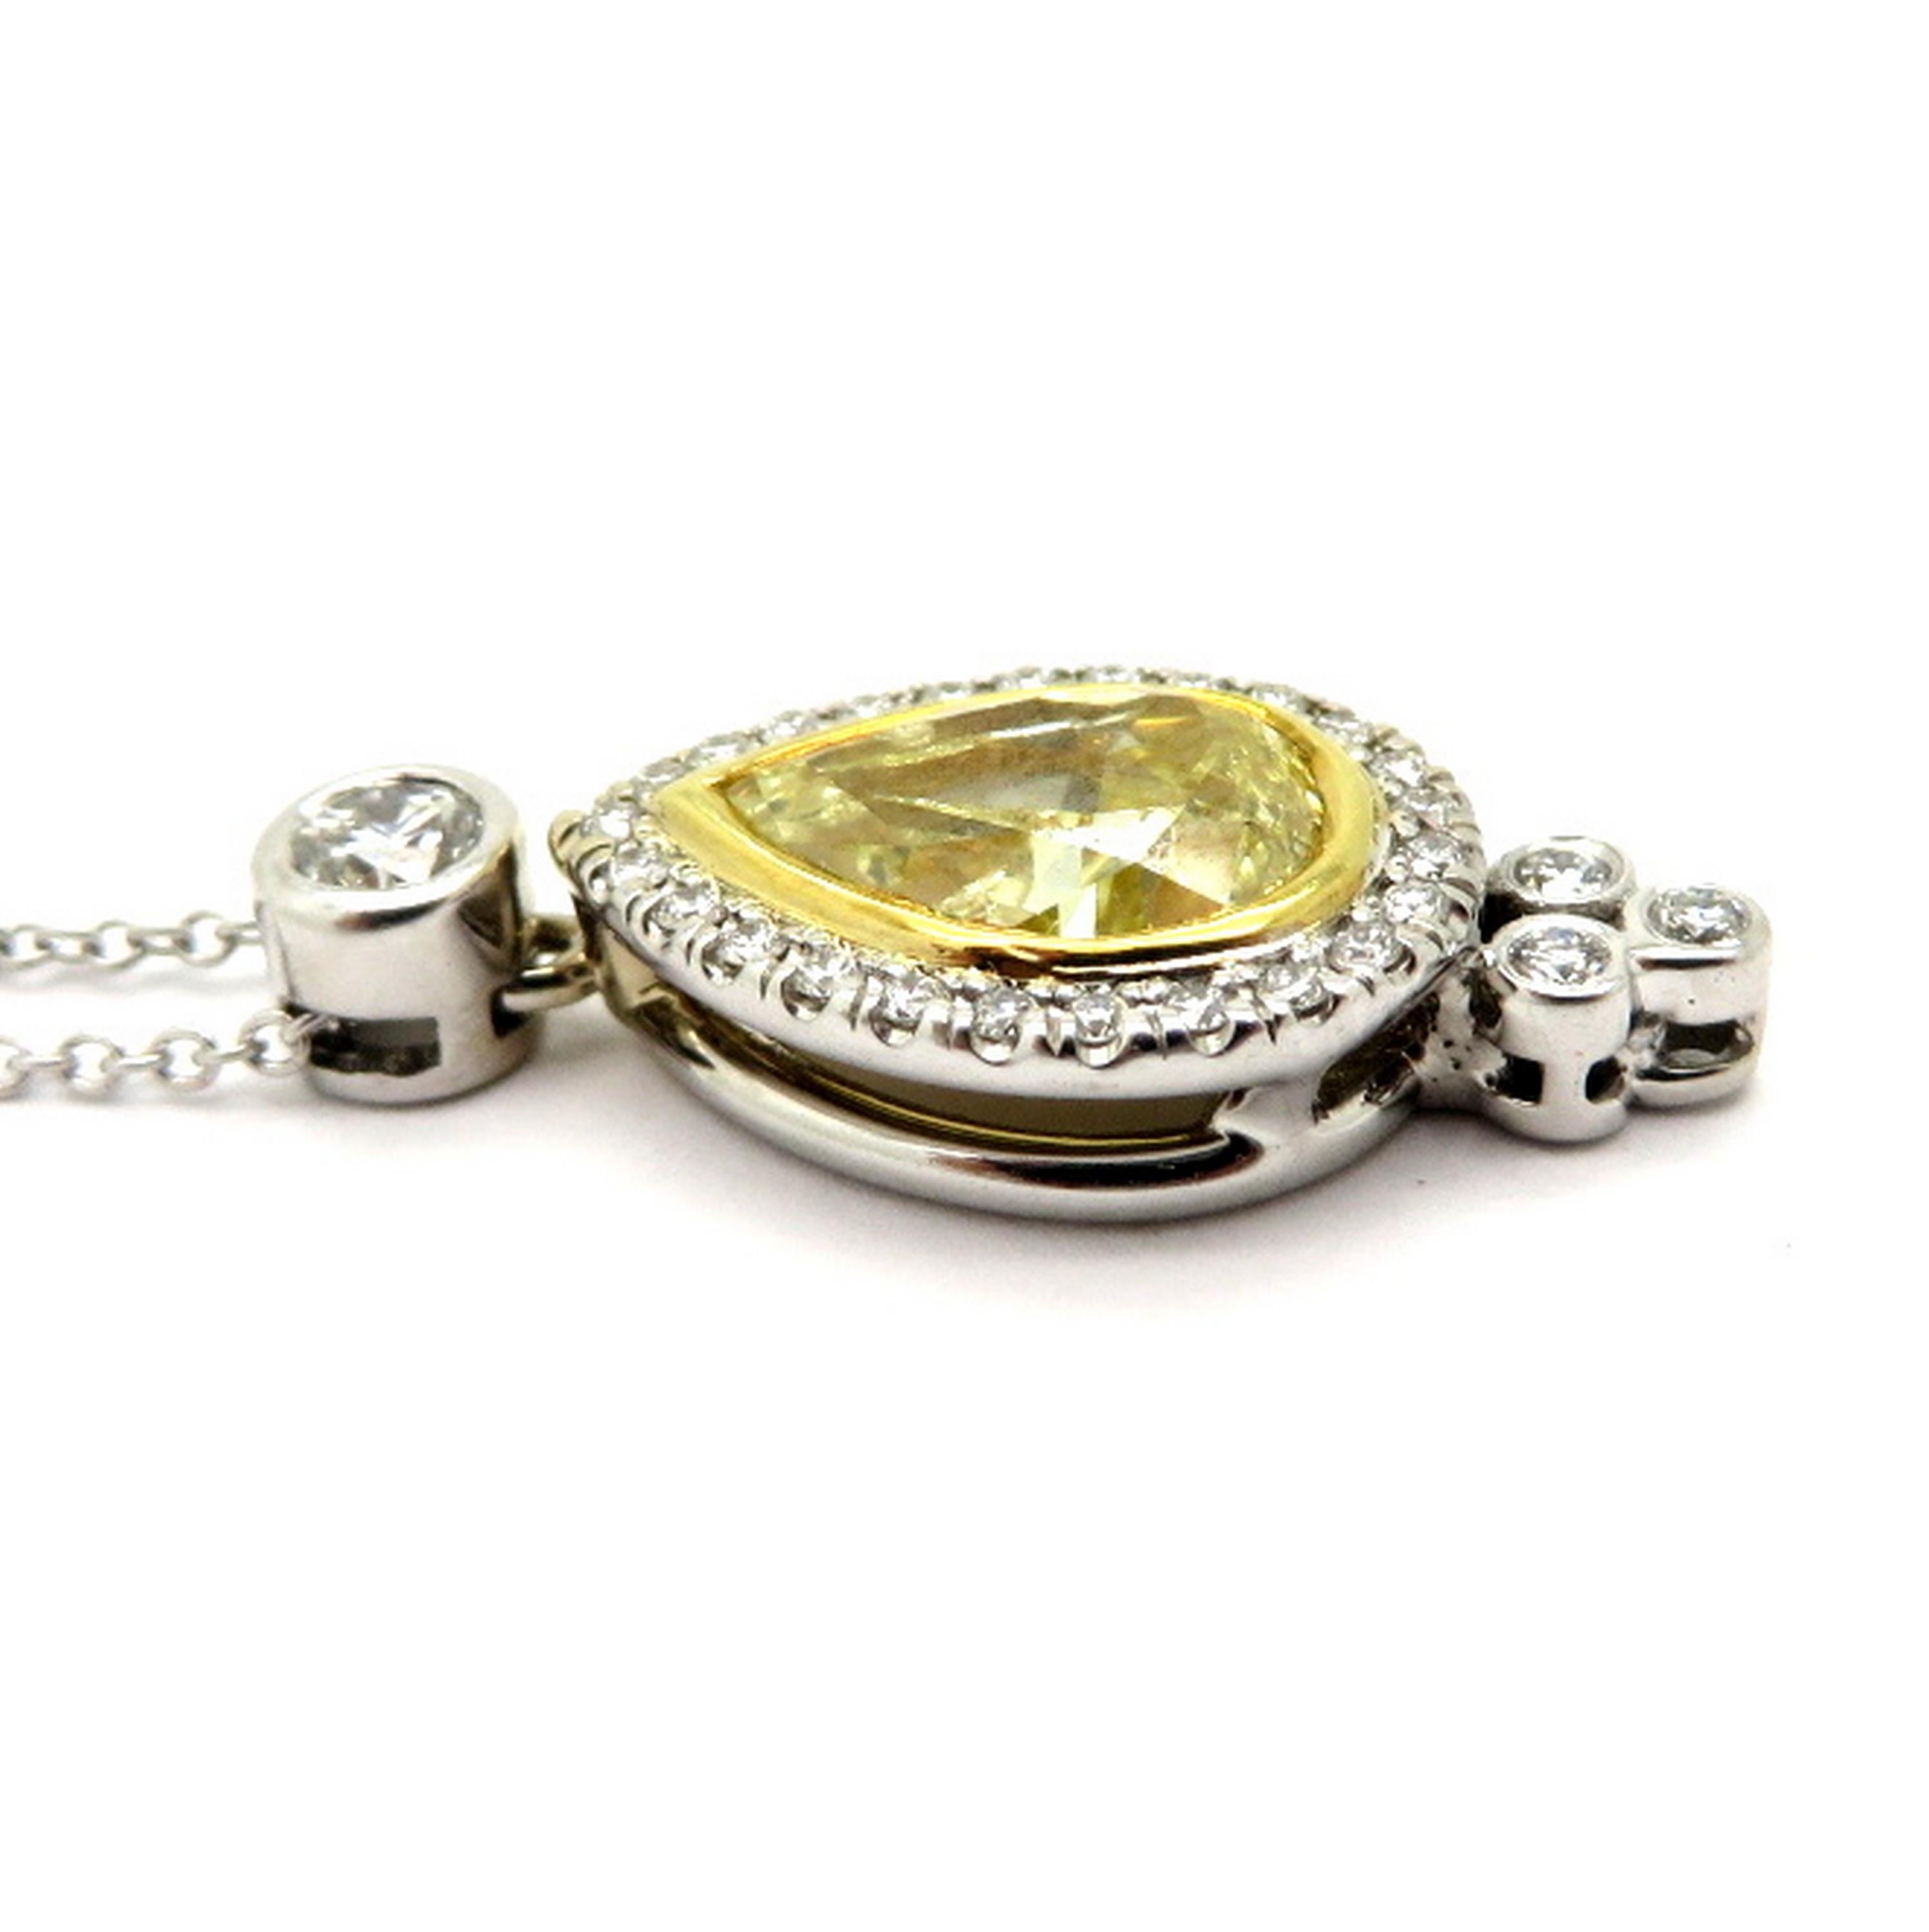 Estate GIA zertifiziert fancy gelben birnenförmigen Diamanten Halskette. In der Mitte befindet sich ein gelber, birnenförmiger Diamant mit GIA-Zertifikat und einem Gewicht von etwa 1,52 Karat. Abmessungen: 8.9 x 6,2 x 3,92 mm. Das GIA-Zertifikat ist